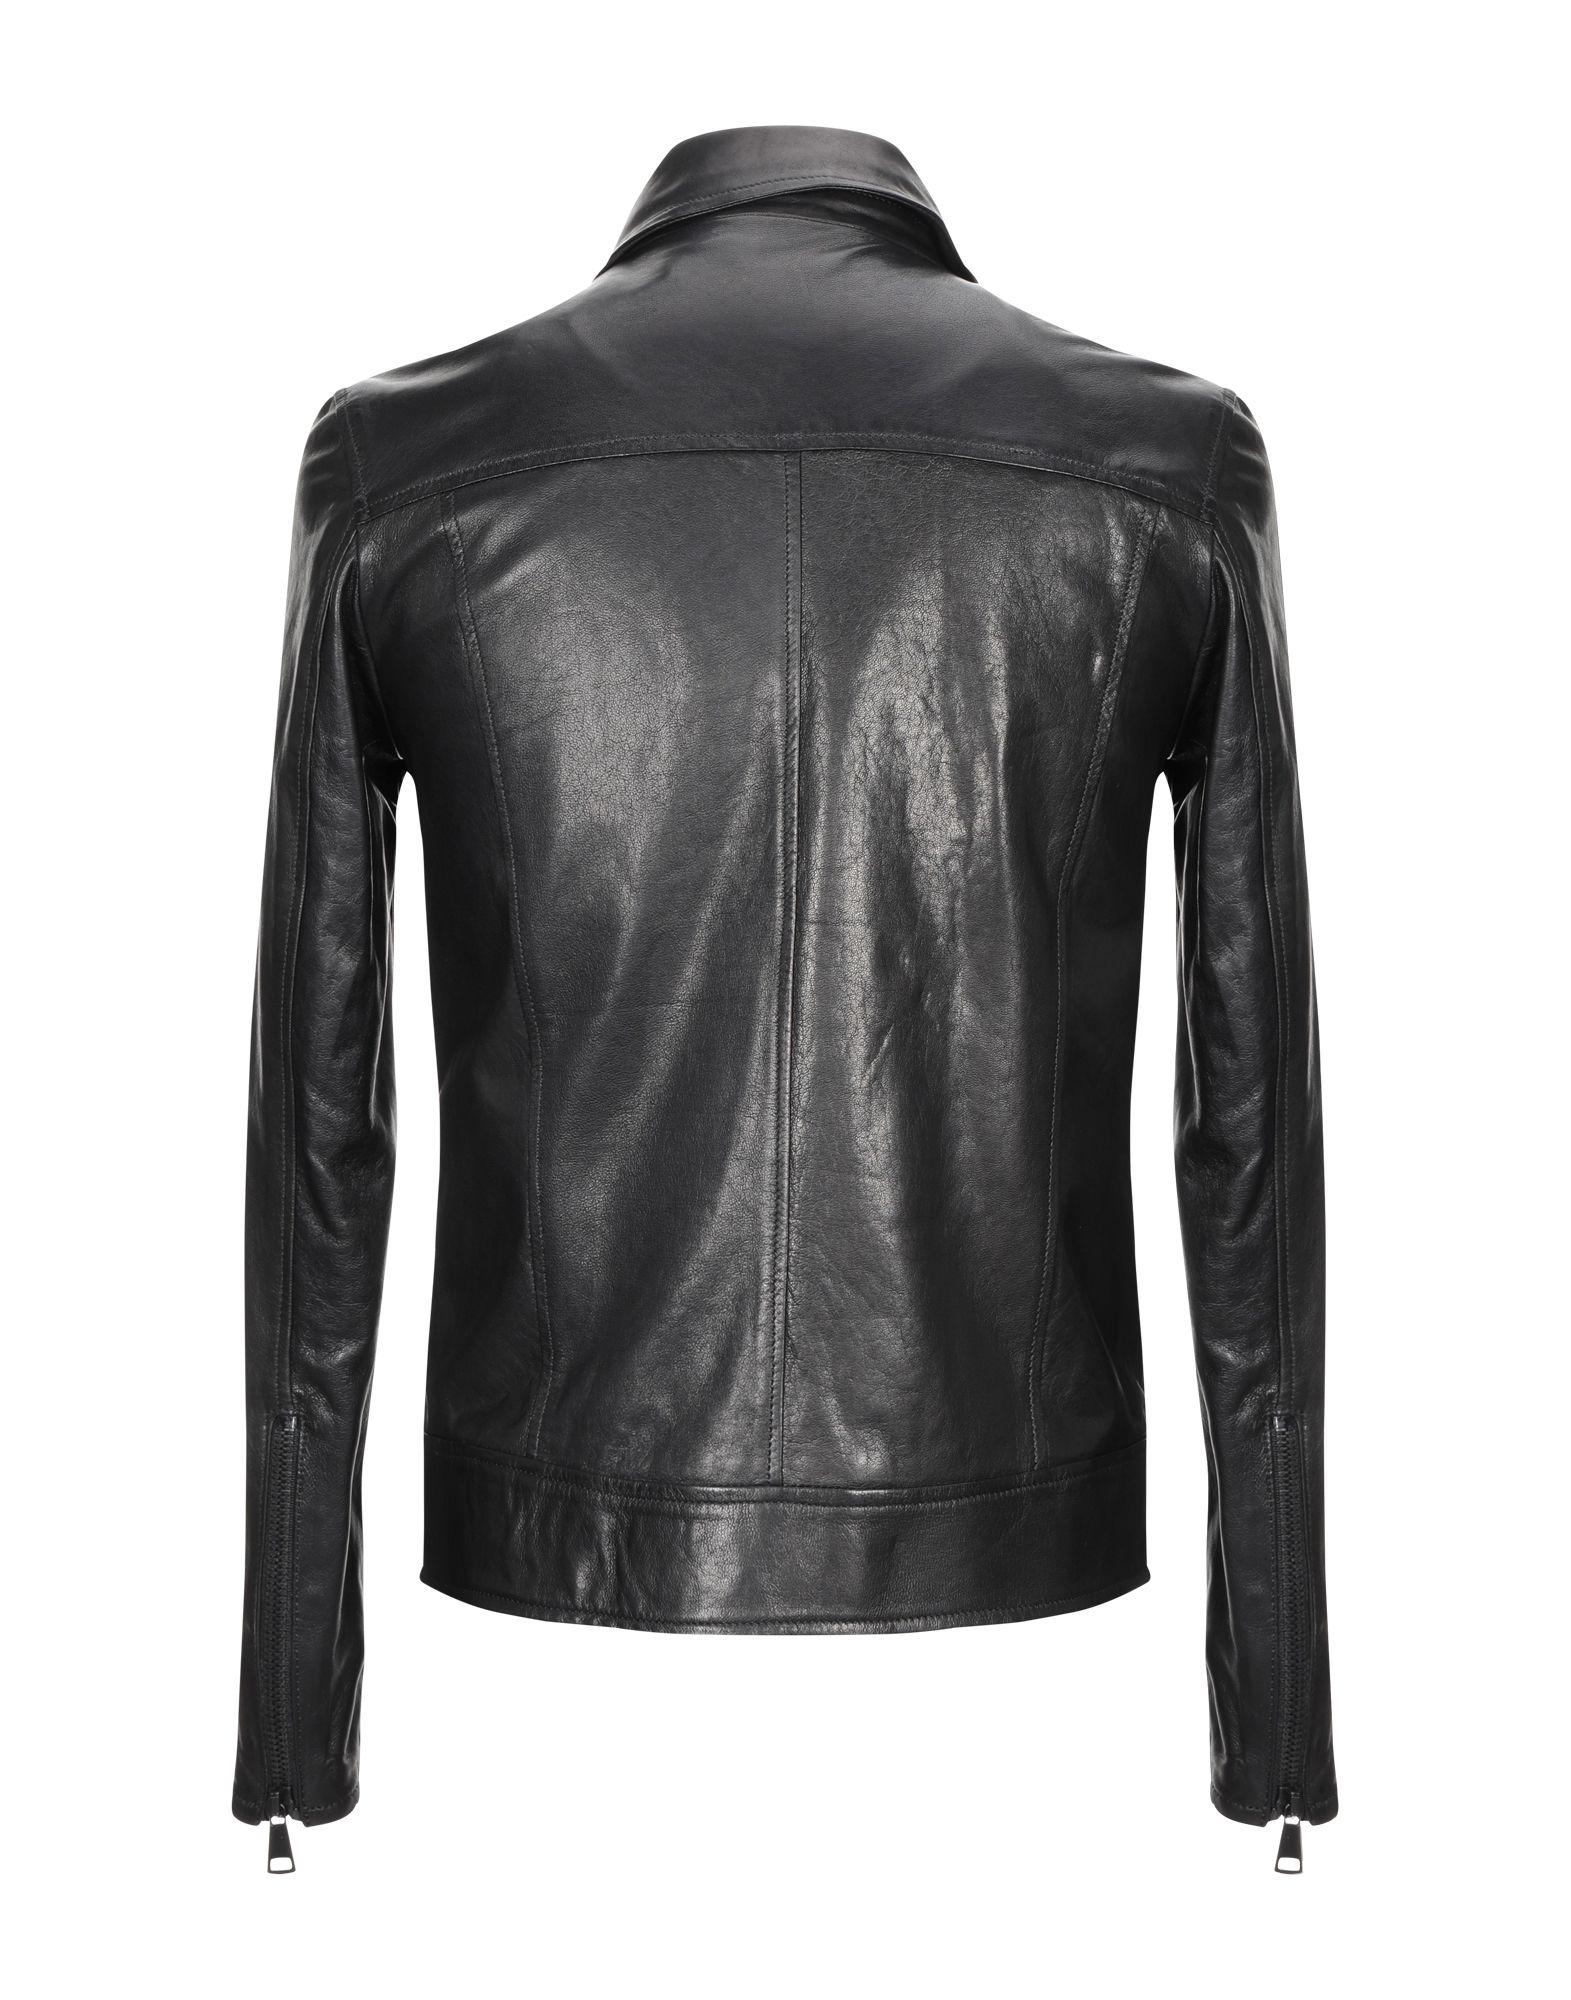 Takeshy Kurosawa Leather Jacket in Black for Men - Lyst